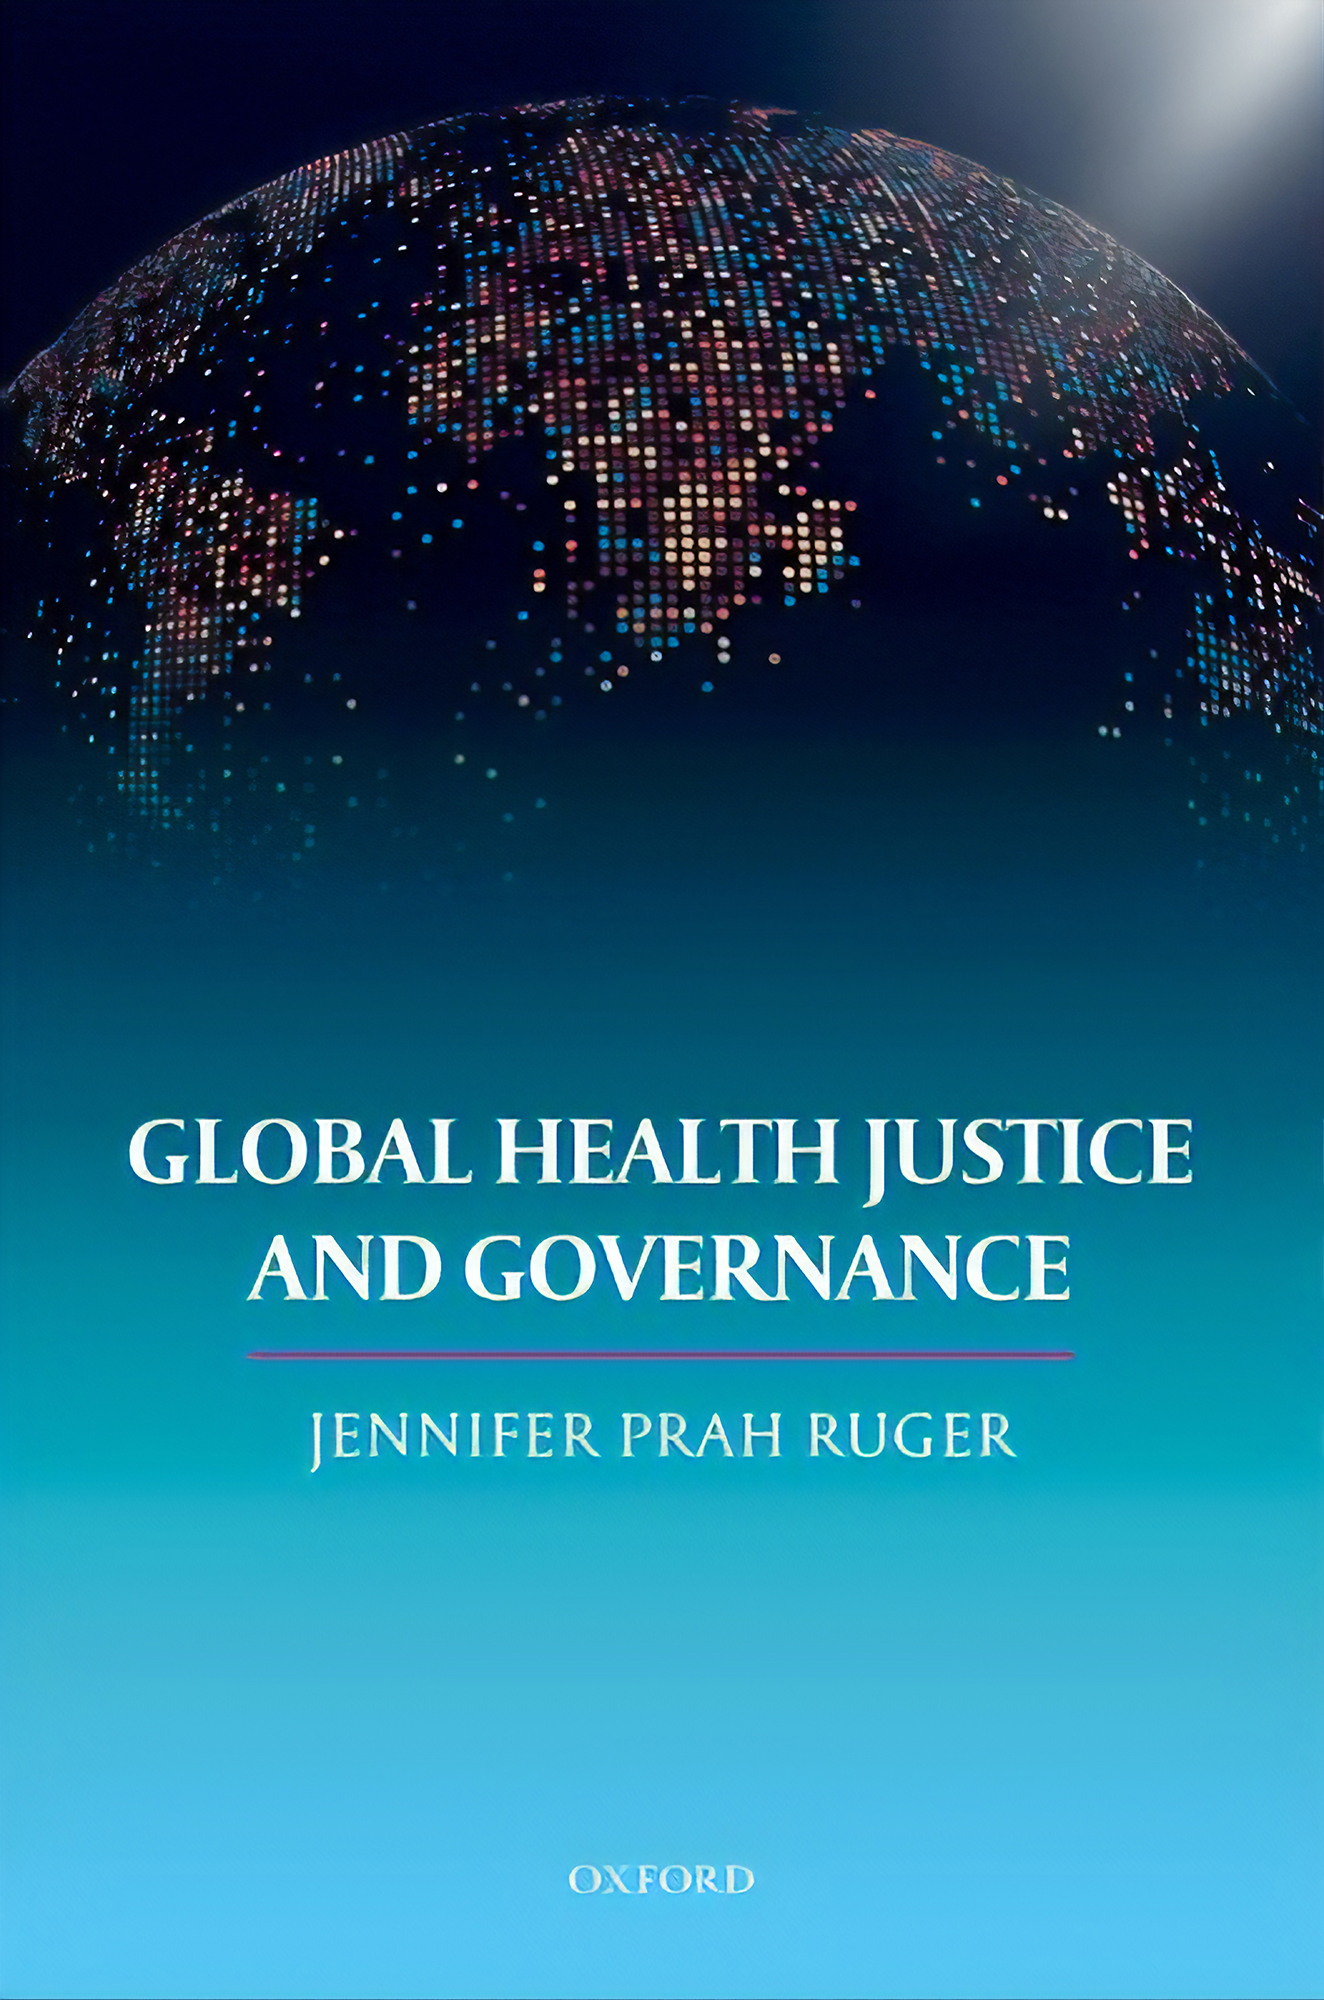 Global Health Justice and Governance by Jennifer Prah Ruger